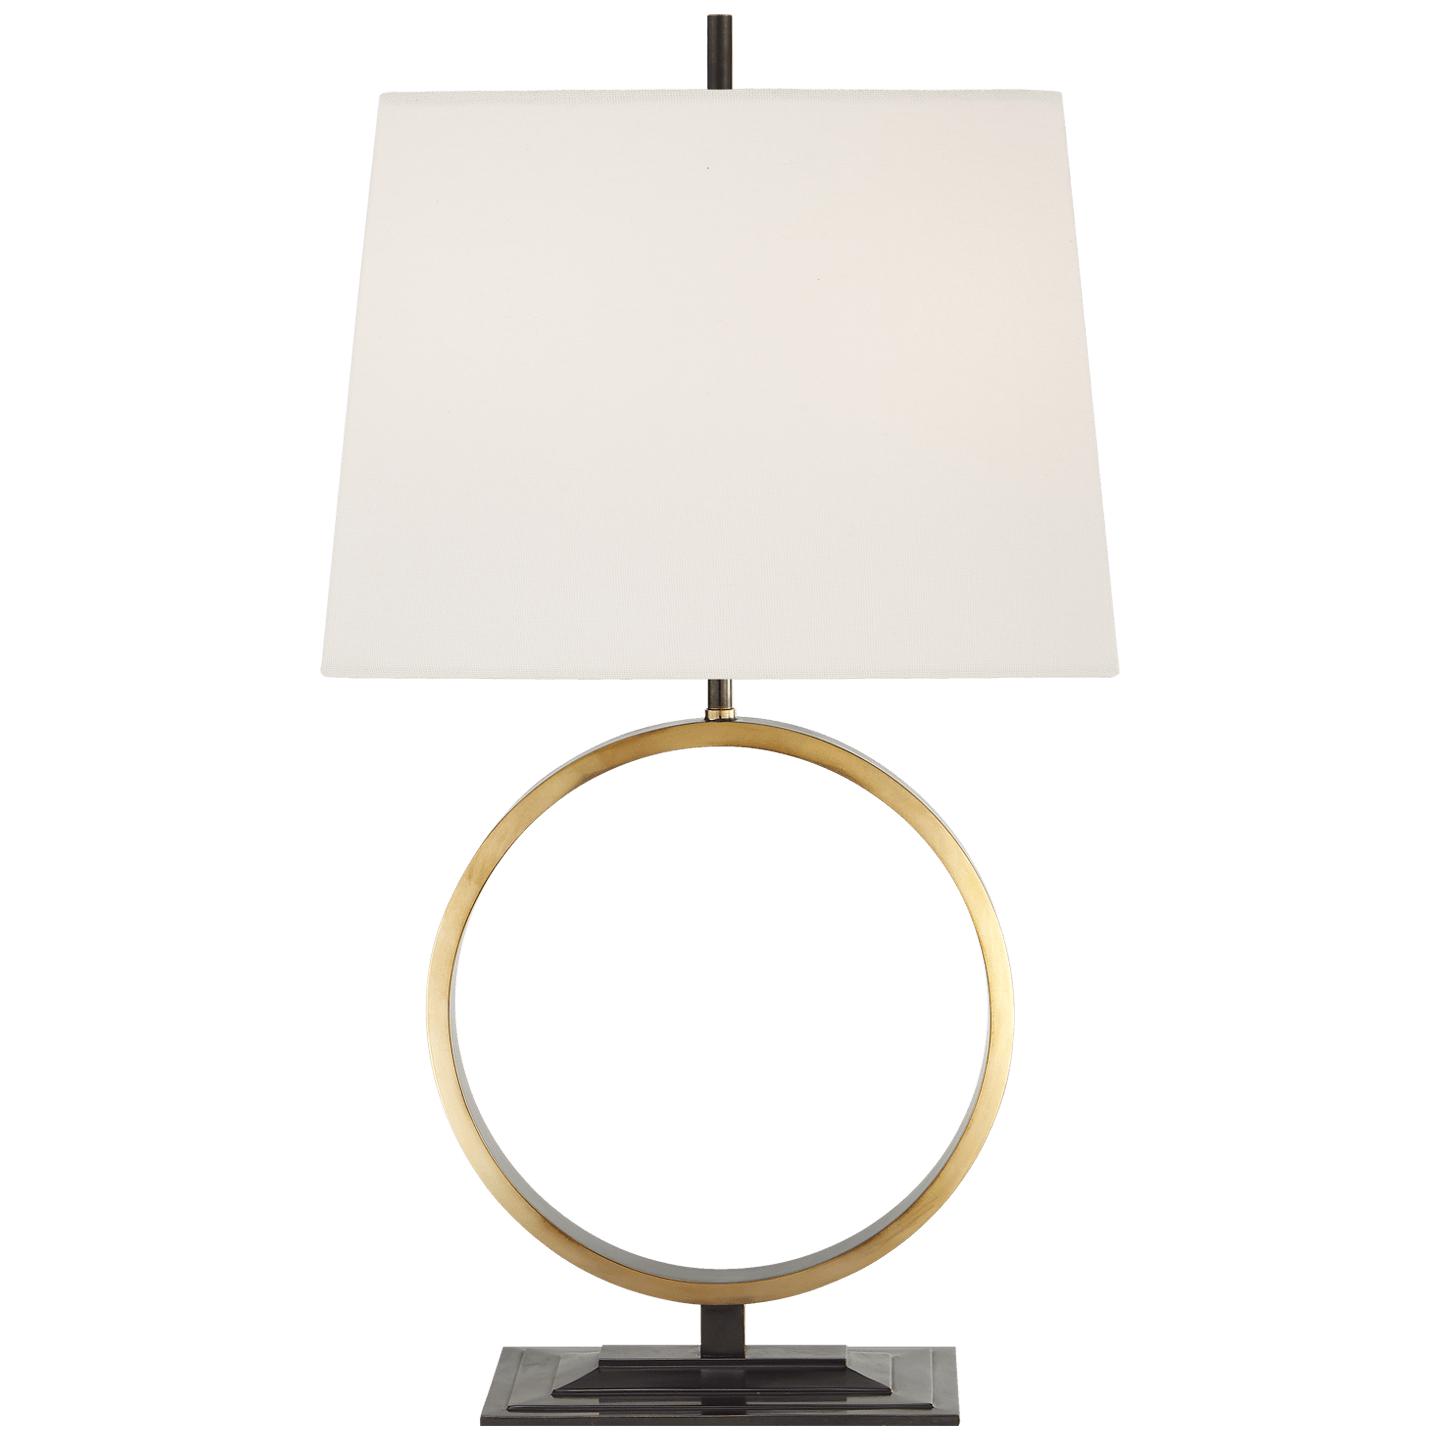 Купить Настольная лампа Simone Medium Table Lamp в интернет-магазине roooms.ru